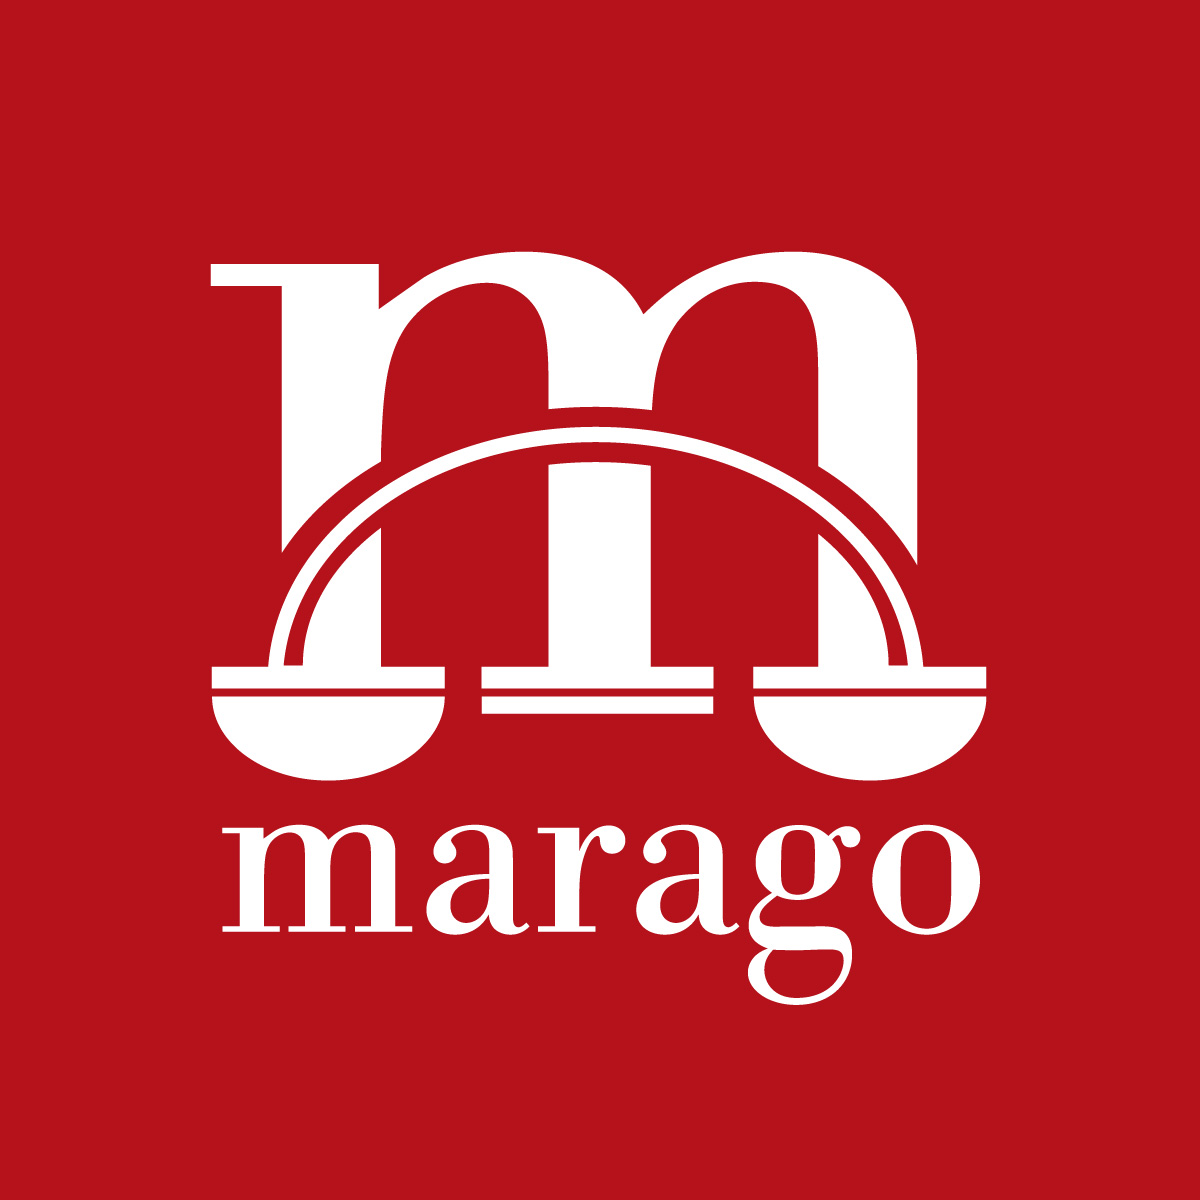 marago attorney logo